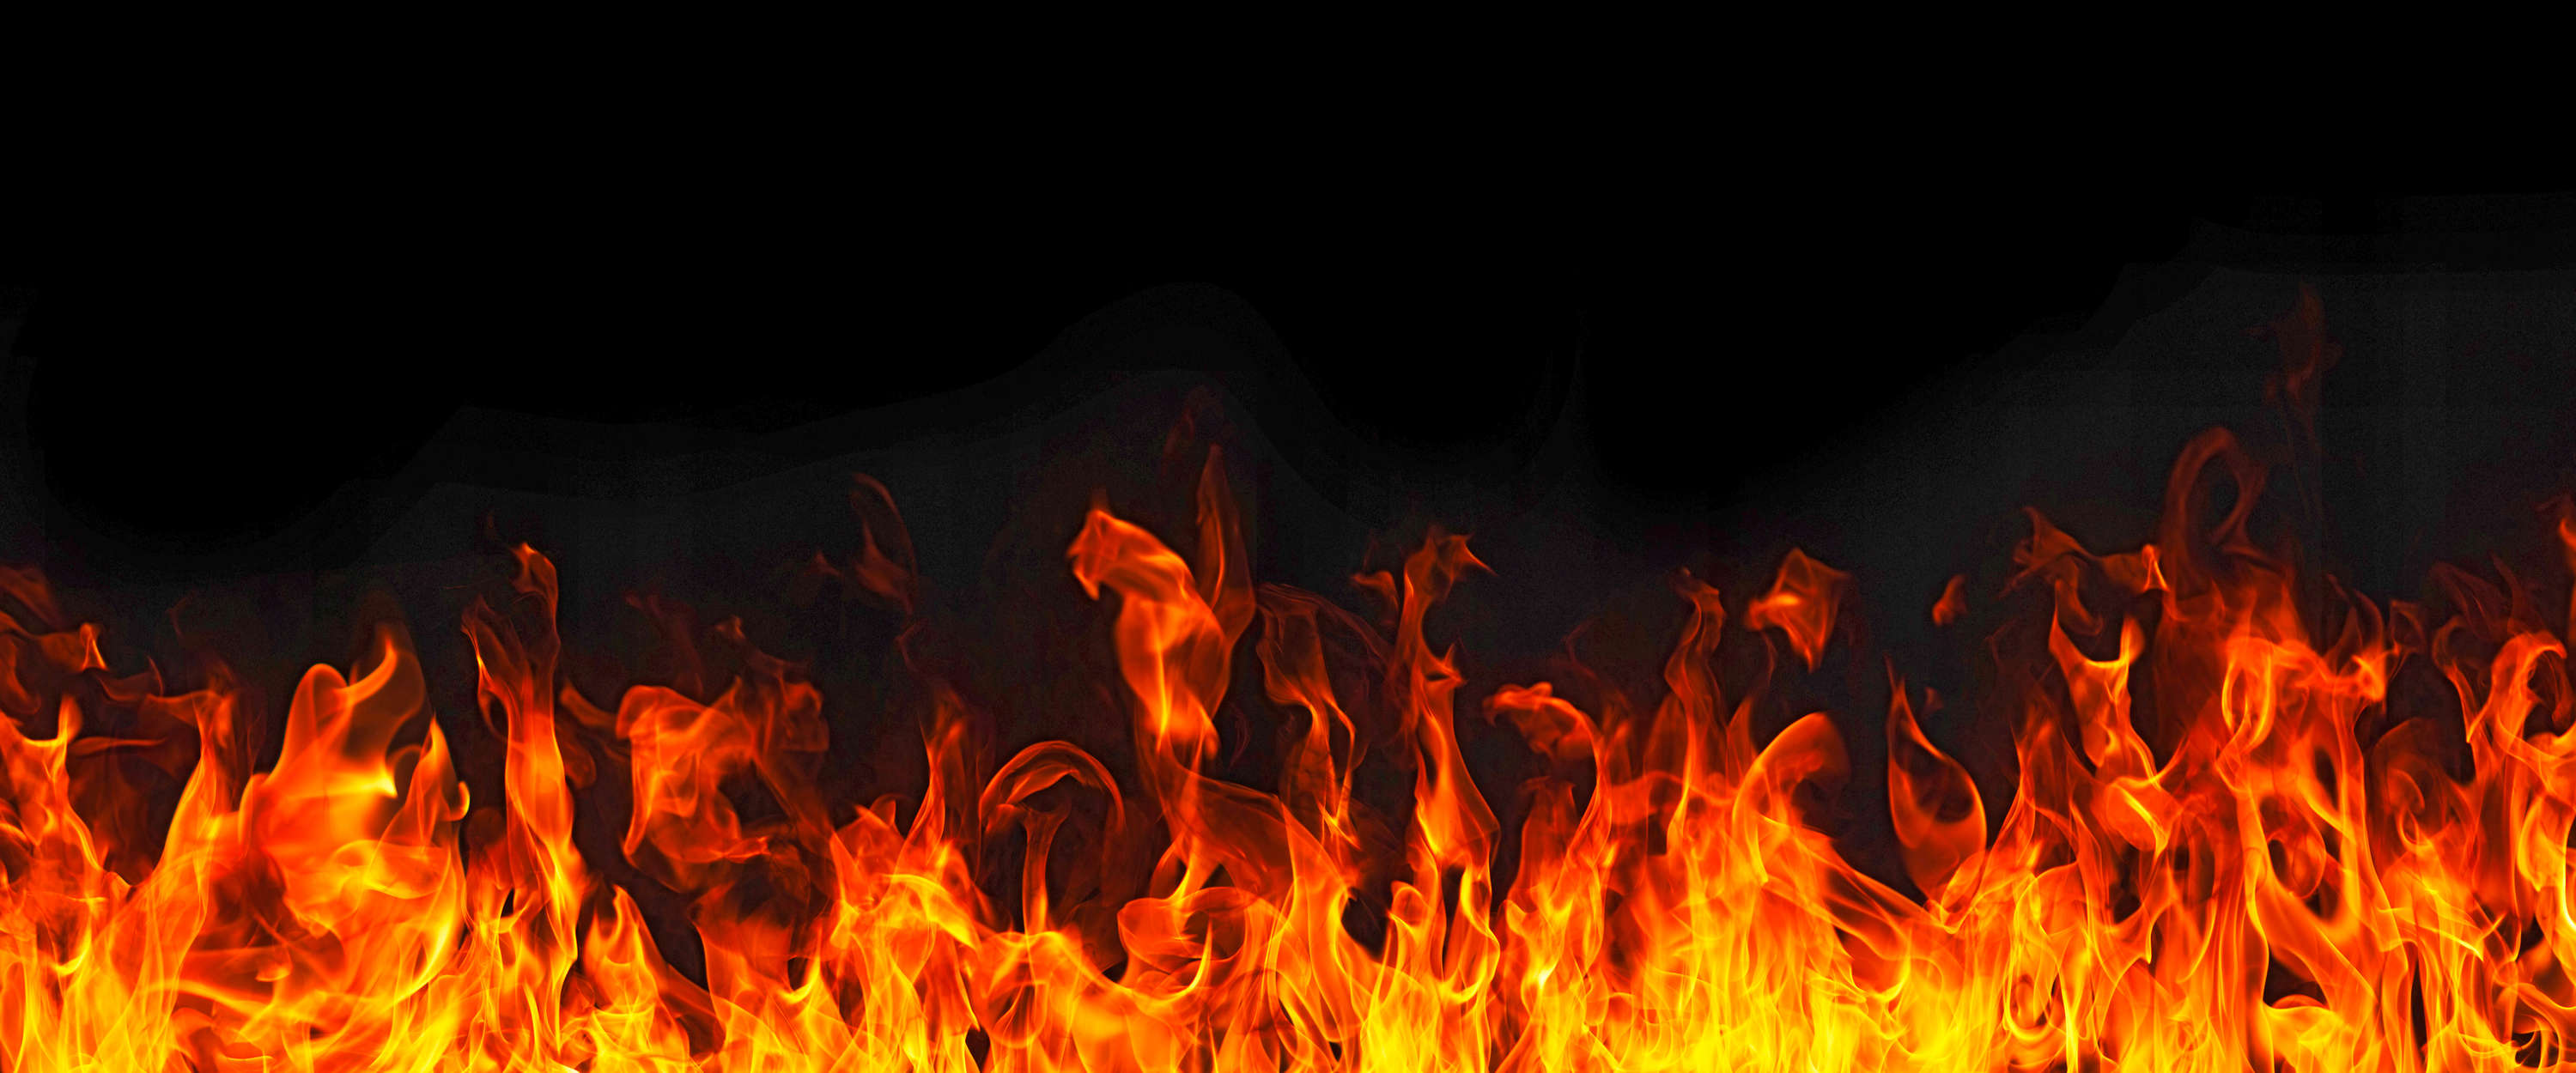             Papel pintado negro con motivo de fuego y llamas
        